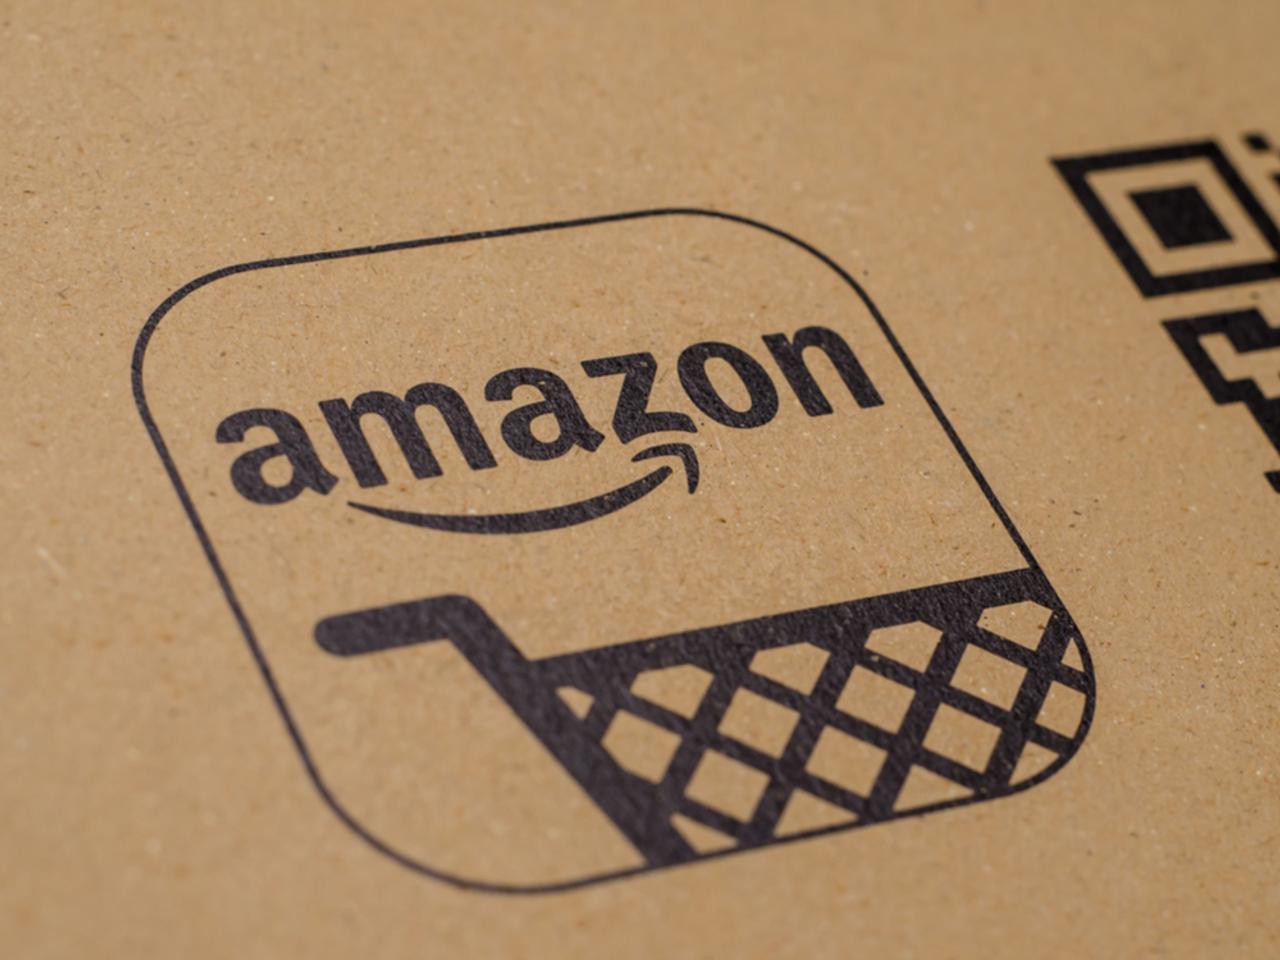 東芝が降りた『サザエさん』、Amazonを含む3社が新スポンサーに決定